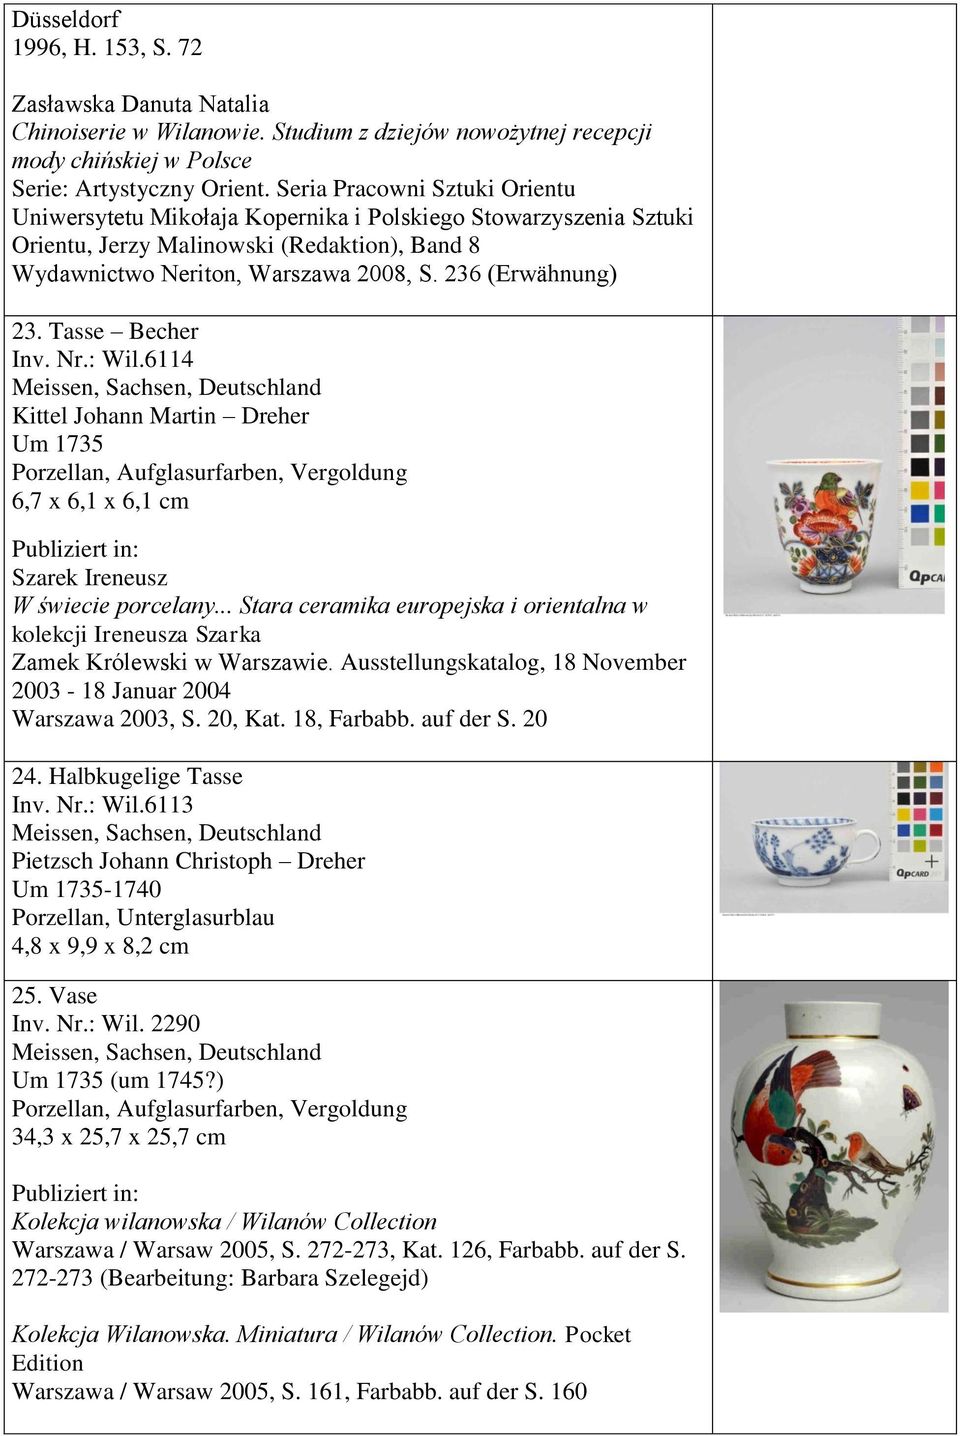 Tasse Becher Inv. Nr.: Wil.6114 Kittel Johann Martin Dreher Um 1735 6,7 x 6,1 x 6,1 cm Szarek Ireneusz W świecie porcelany.